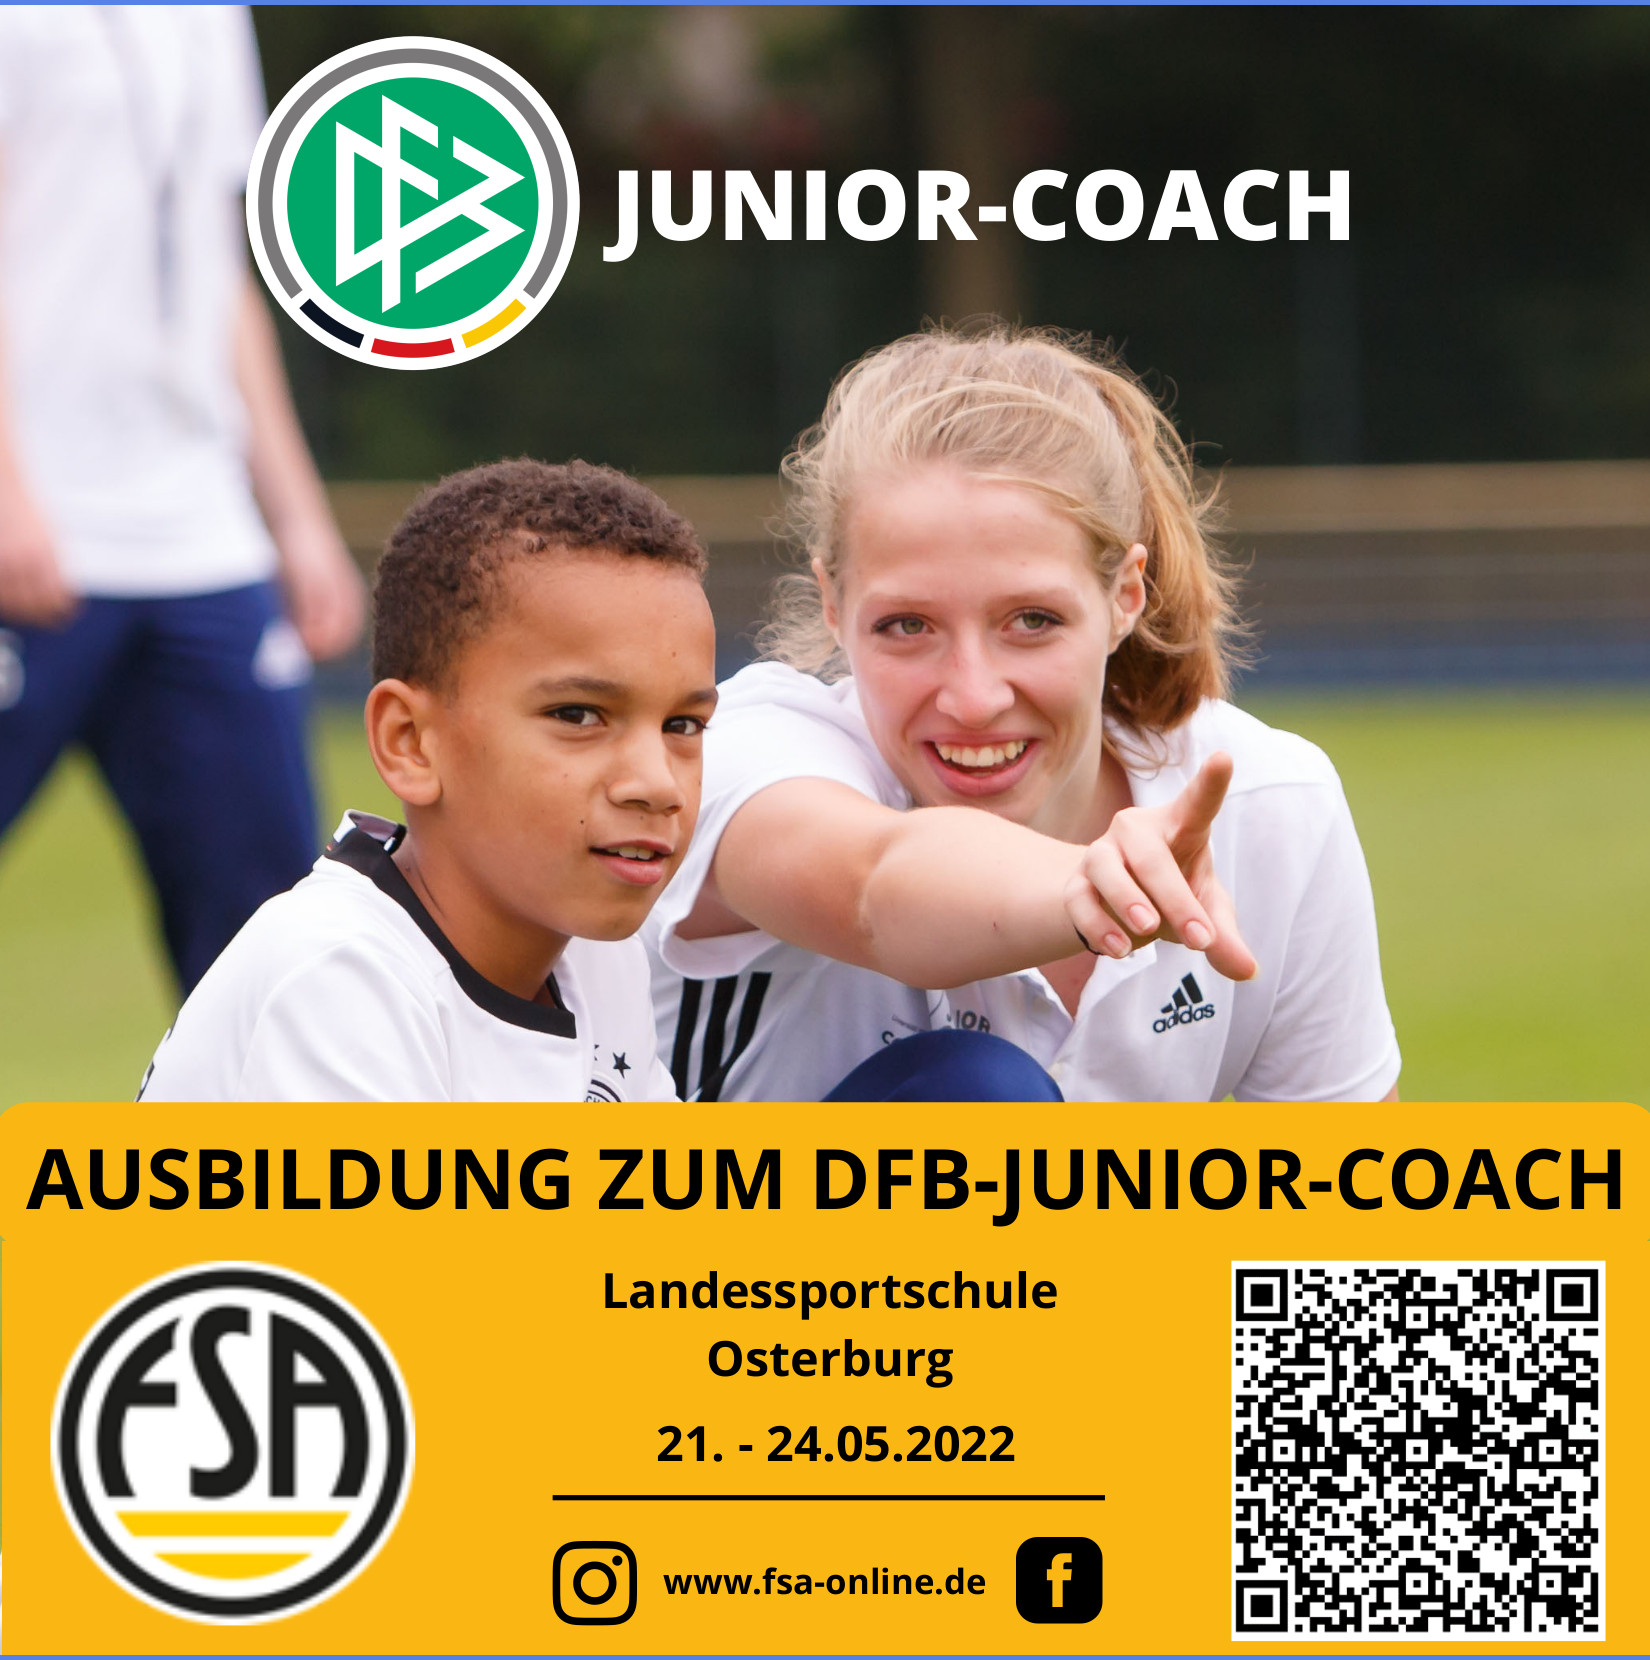 Ausbildung zum DFB-Junior-Coach in Osterburg